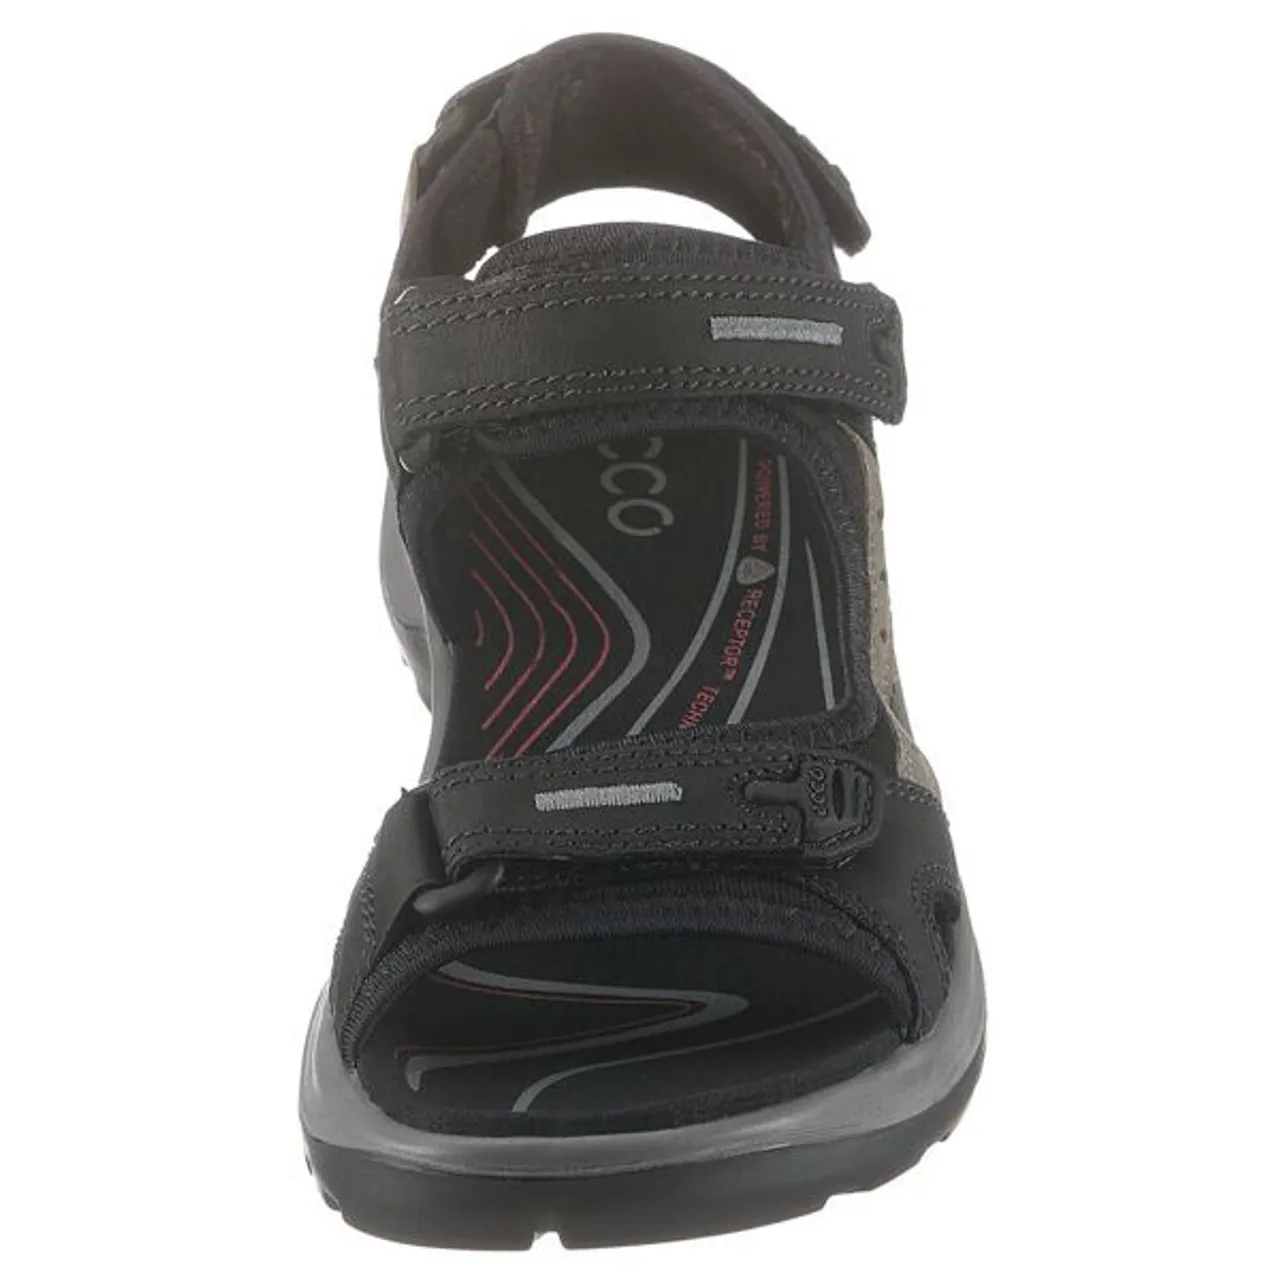 Trekkingsandale ECCO "OFFROAD" Gr. 36, schwarz (schwarz, grau) Damen Schuhe